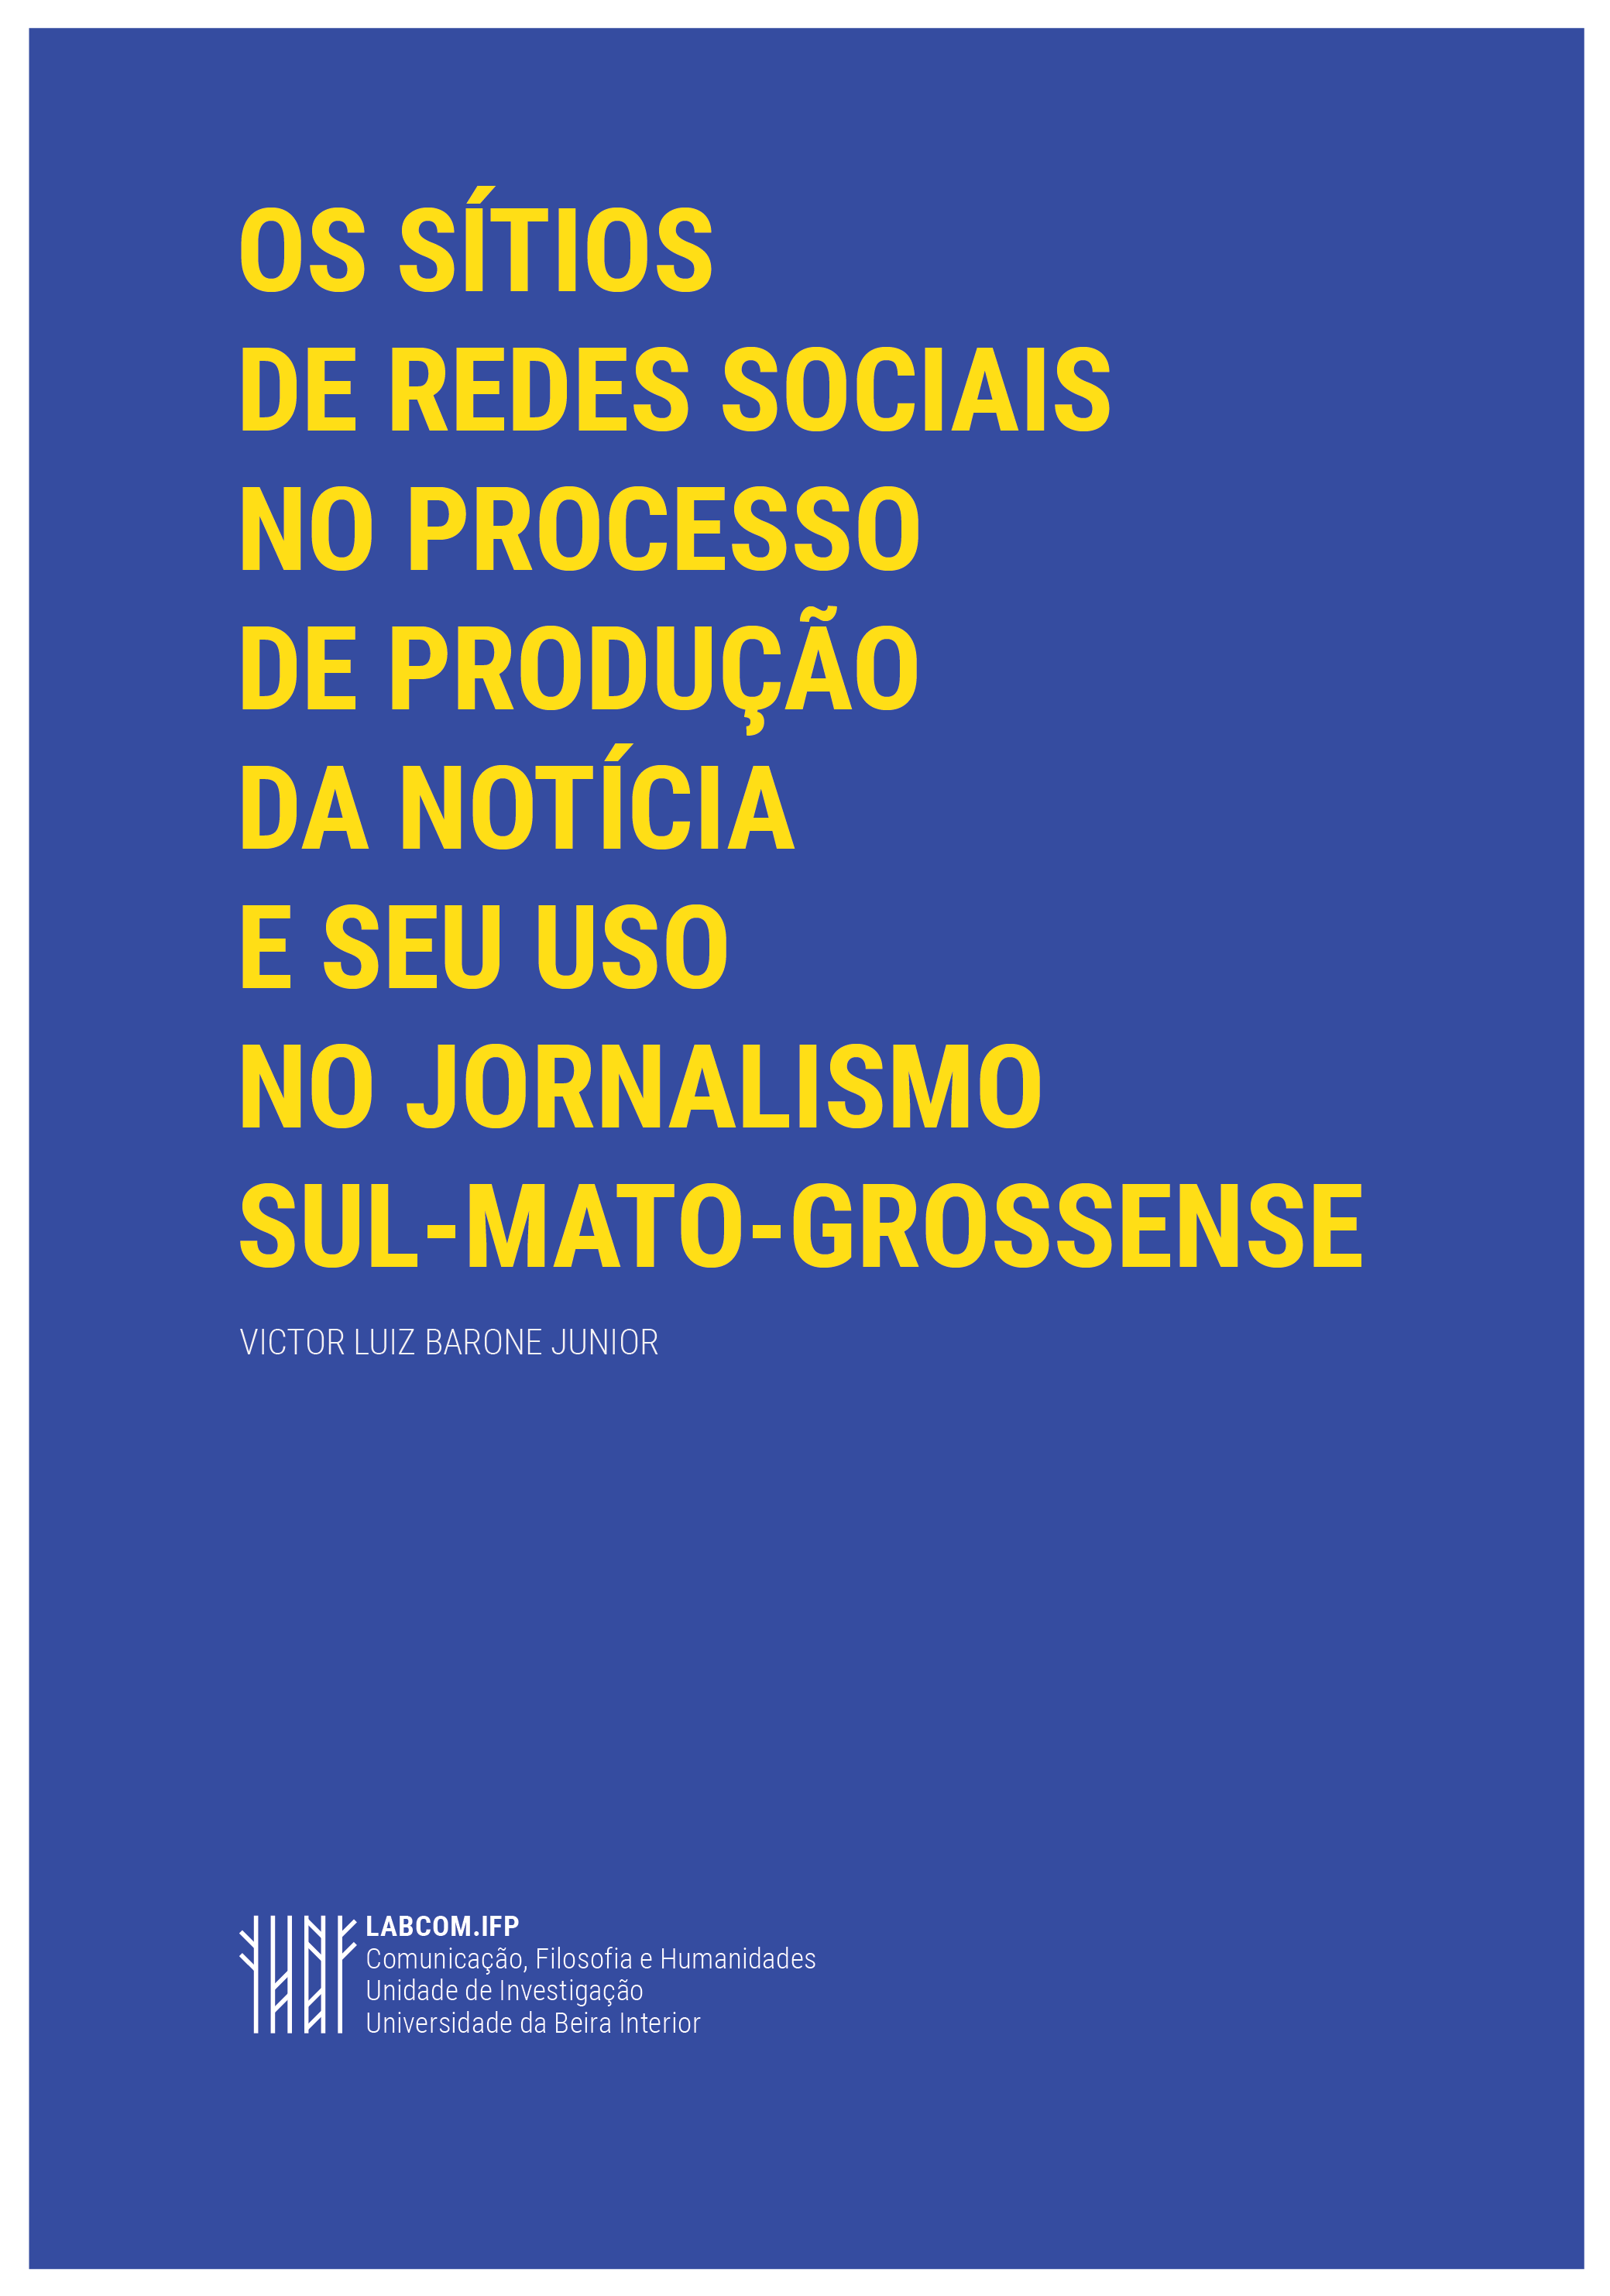 Capa: Victor Luiz Barone Junior (2016) Os sítios de redes sociais no processo de produção da notícia e seu uso no jornalismo sul-mato-grossense. Communication  +  Philosophy  +  Humanities. .